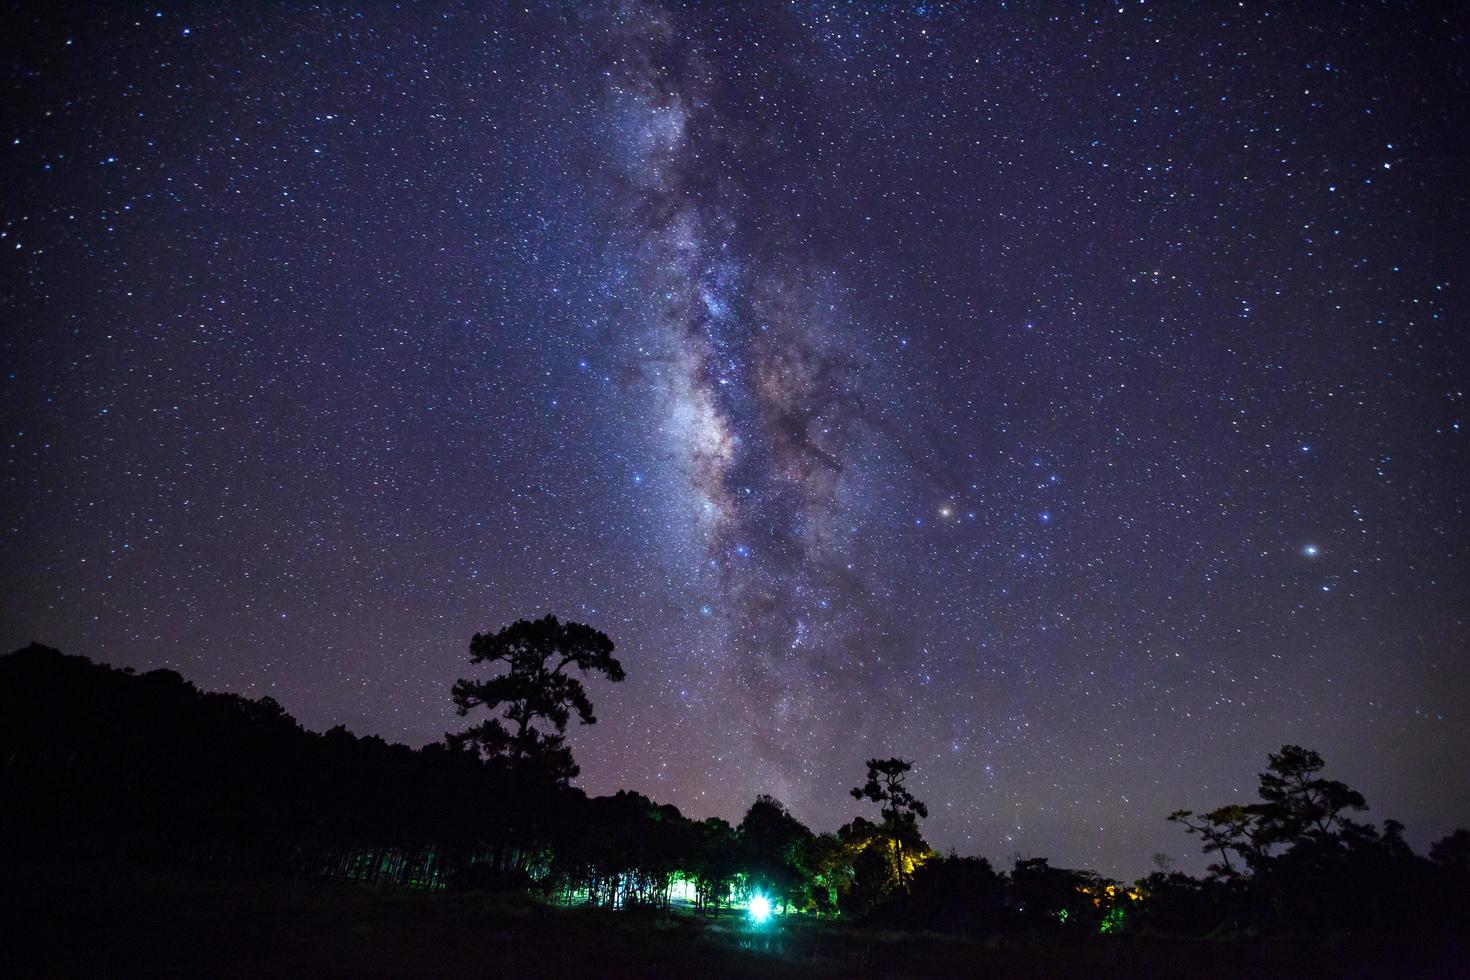 Sternenhimmel und Milchstraßengalaxie mit Sternen und Weltraumstaub im Universum foto